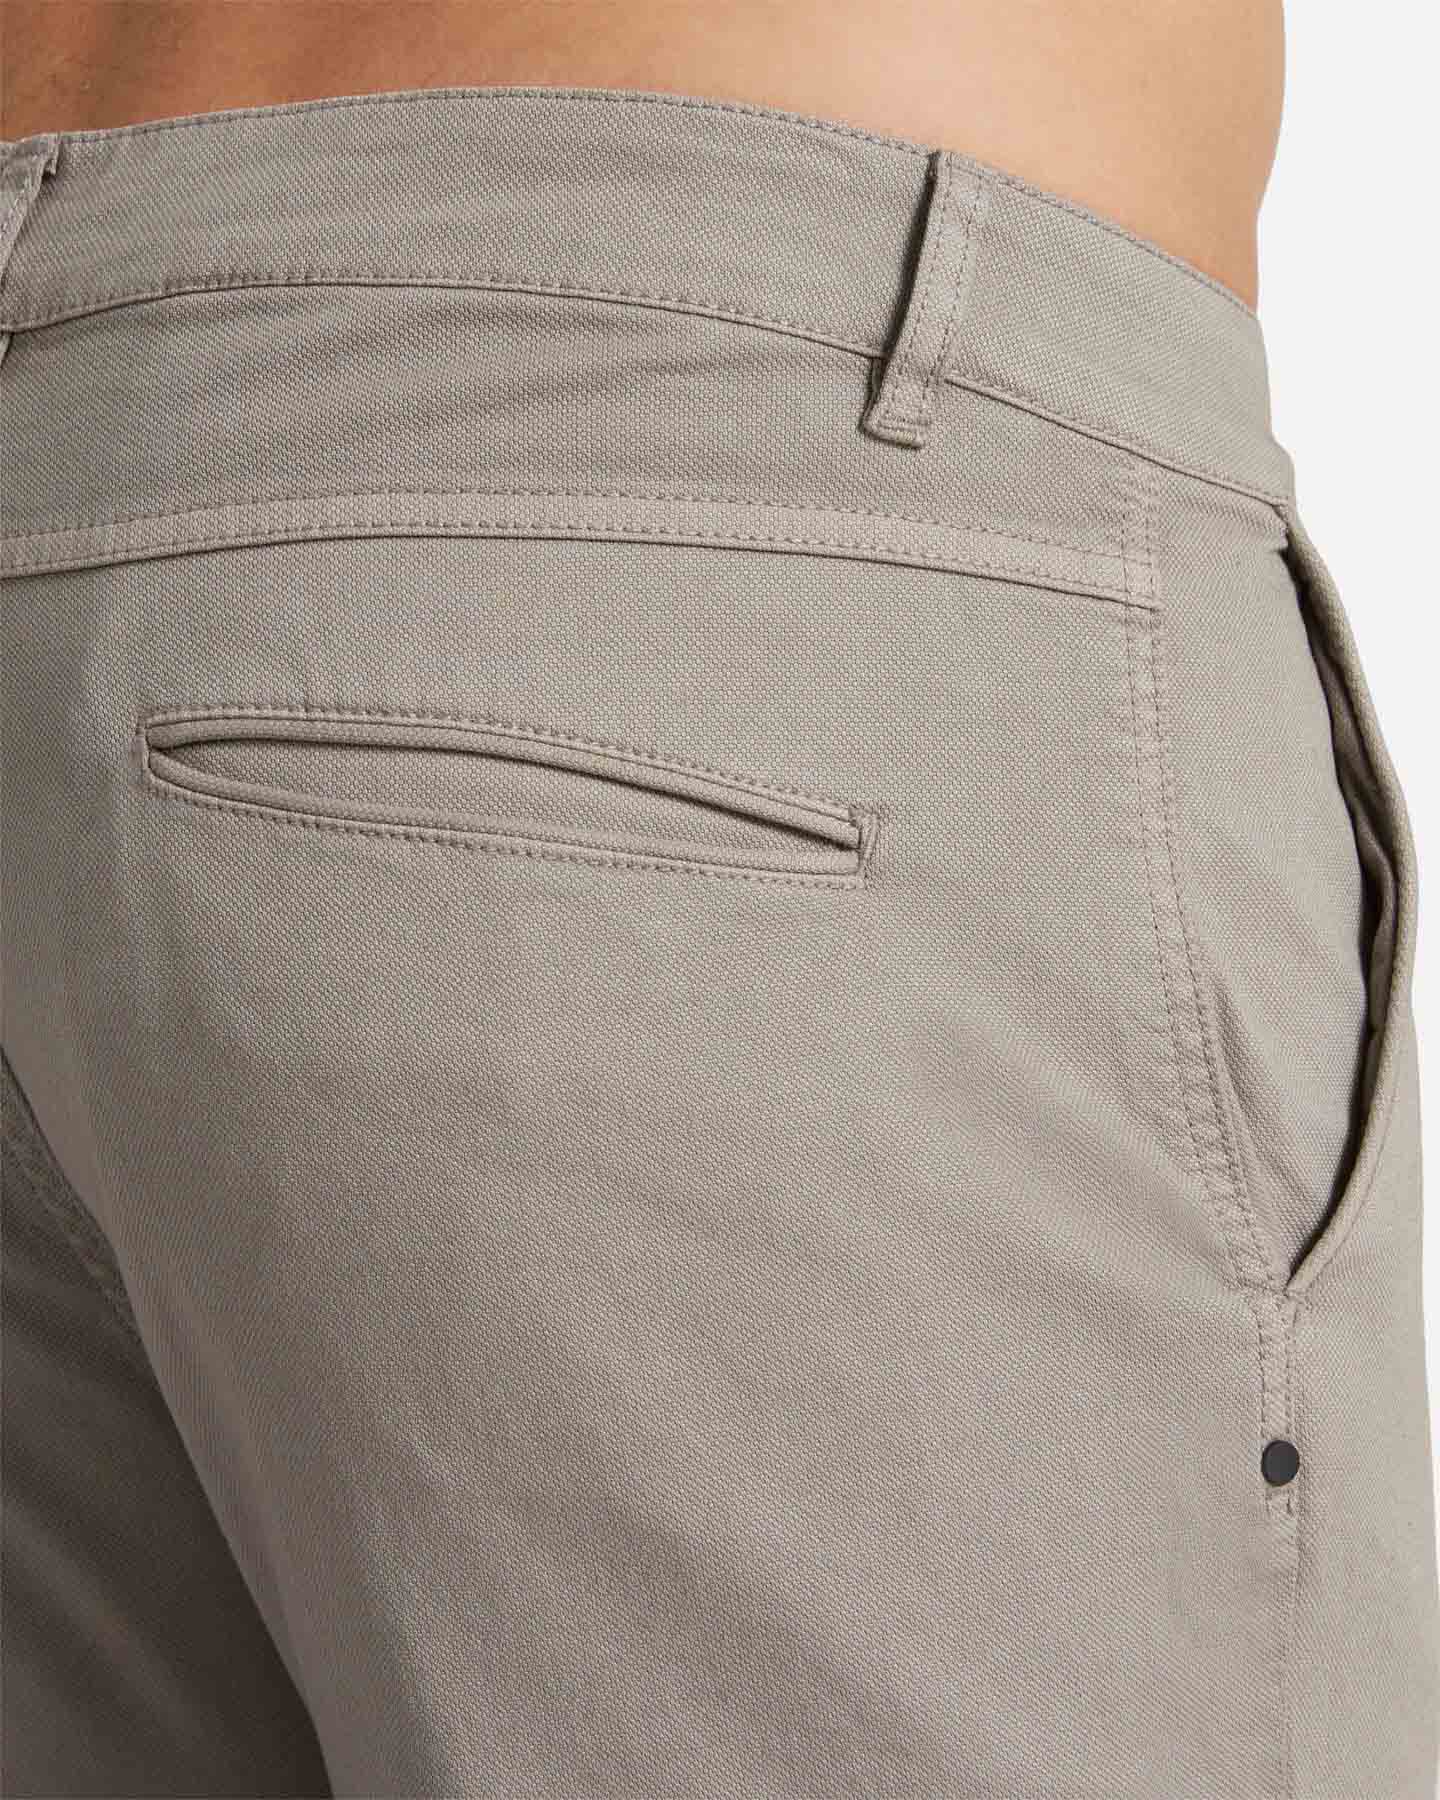  Pantalone BEST COMPANY COTTON LINE M S4131673|011|44 scatto 3